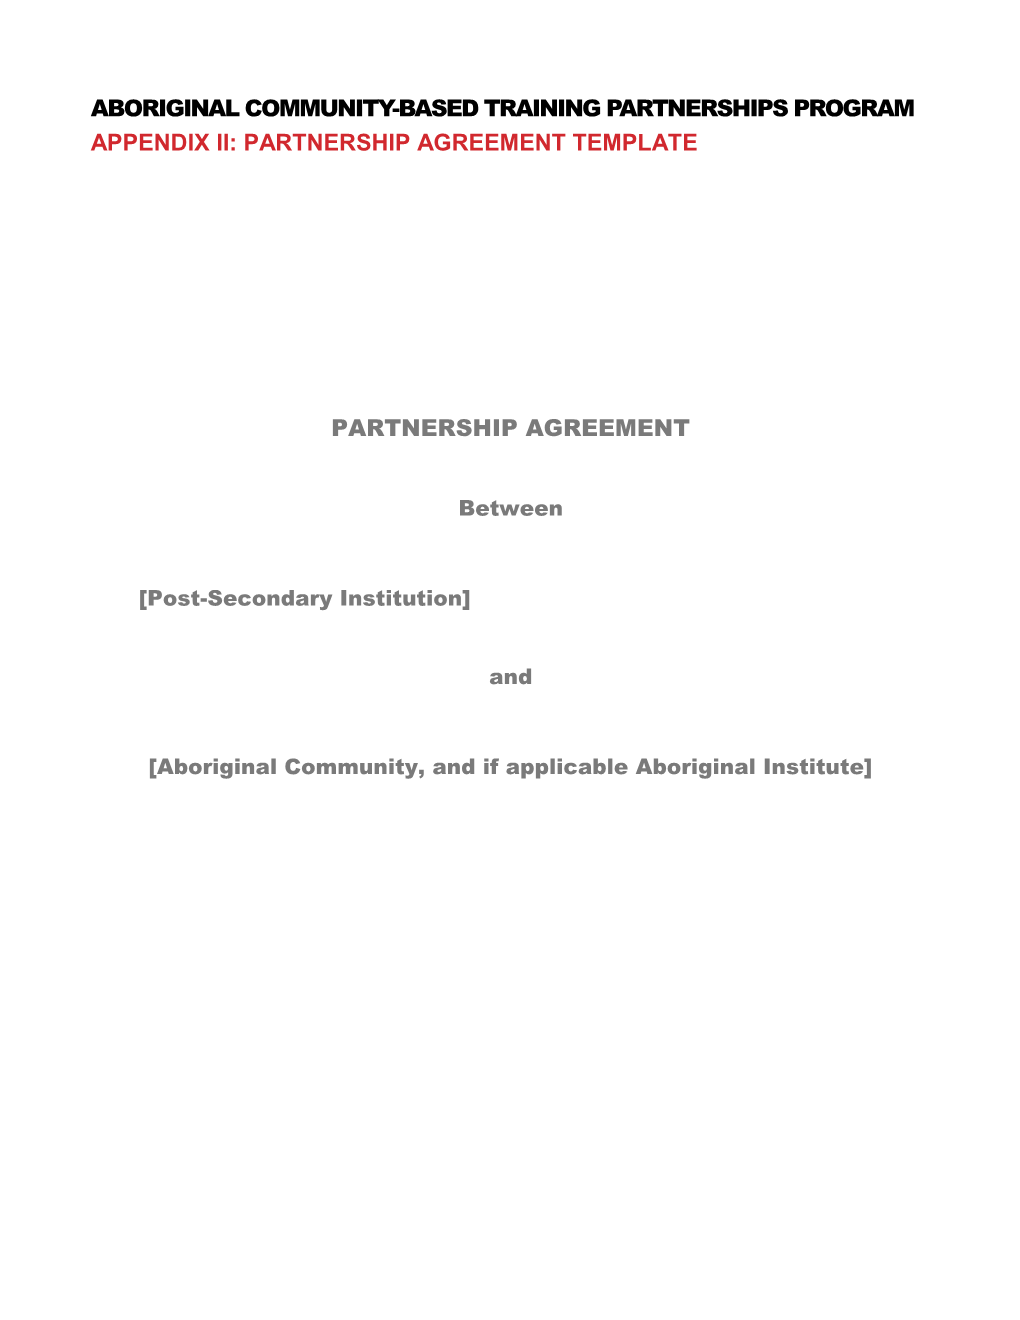 Aboriginal Community-Based Training Partnerships Program